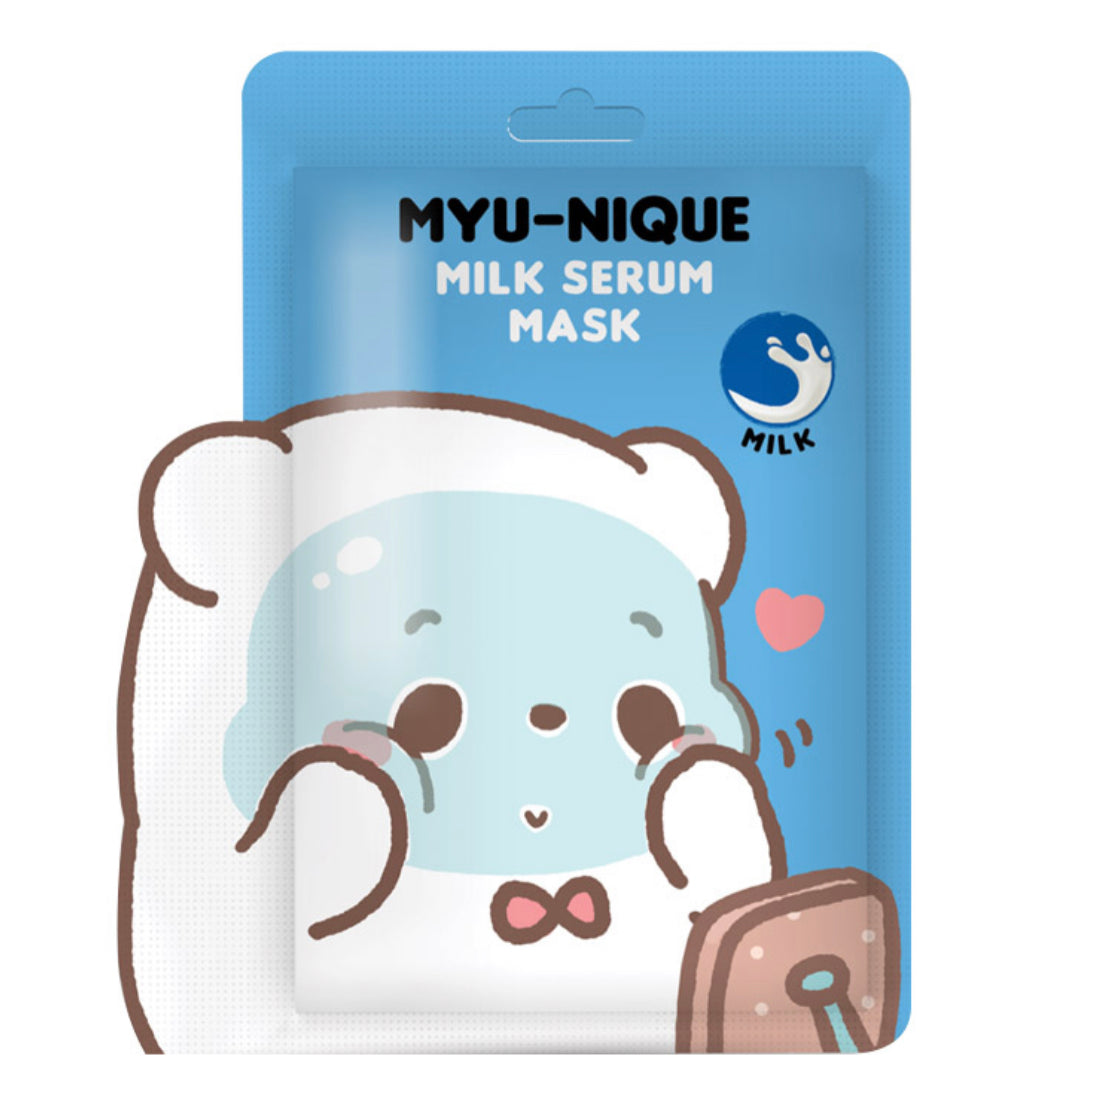 MYU-NIQUE Milk Serum Mask